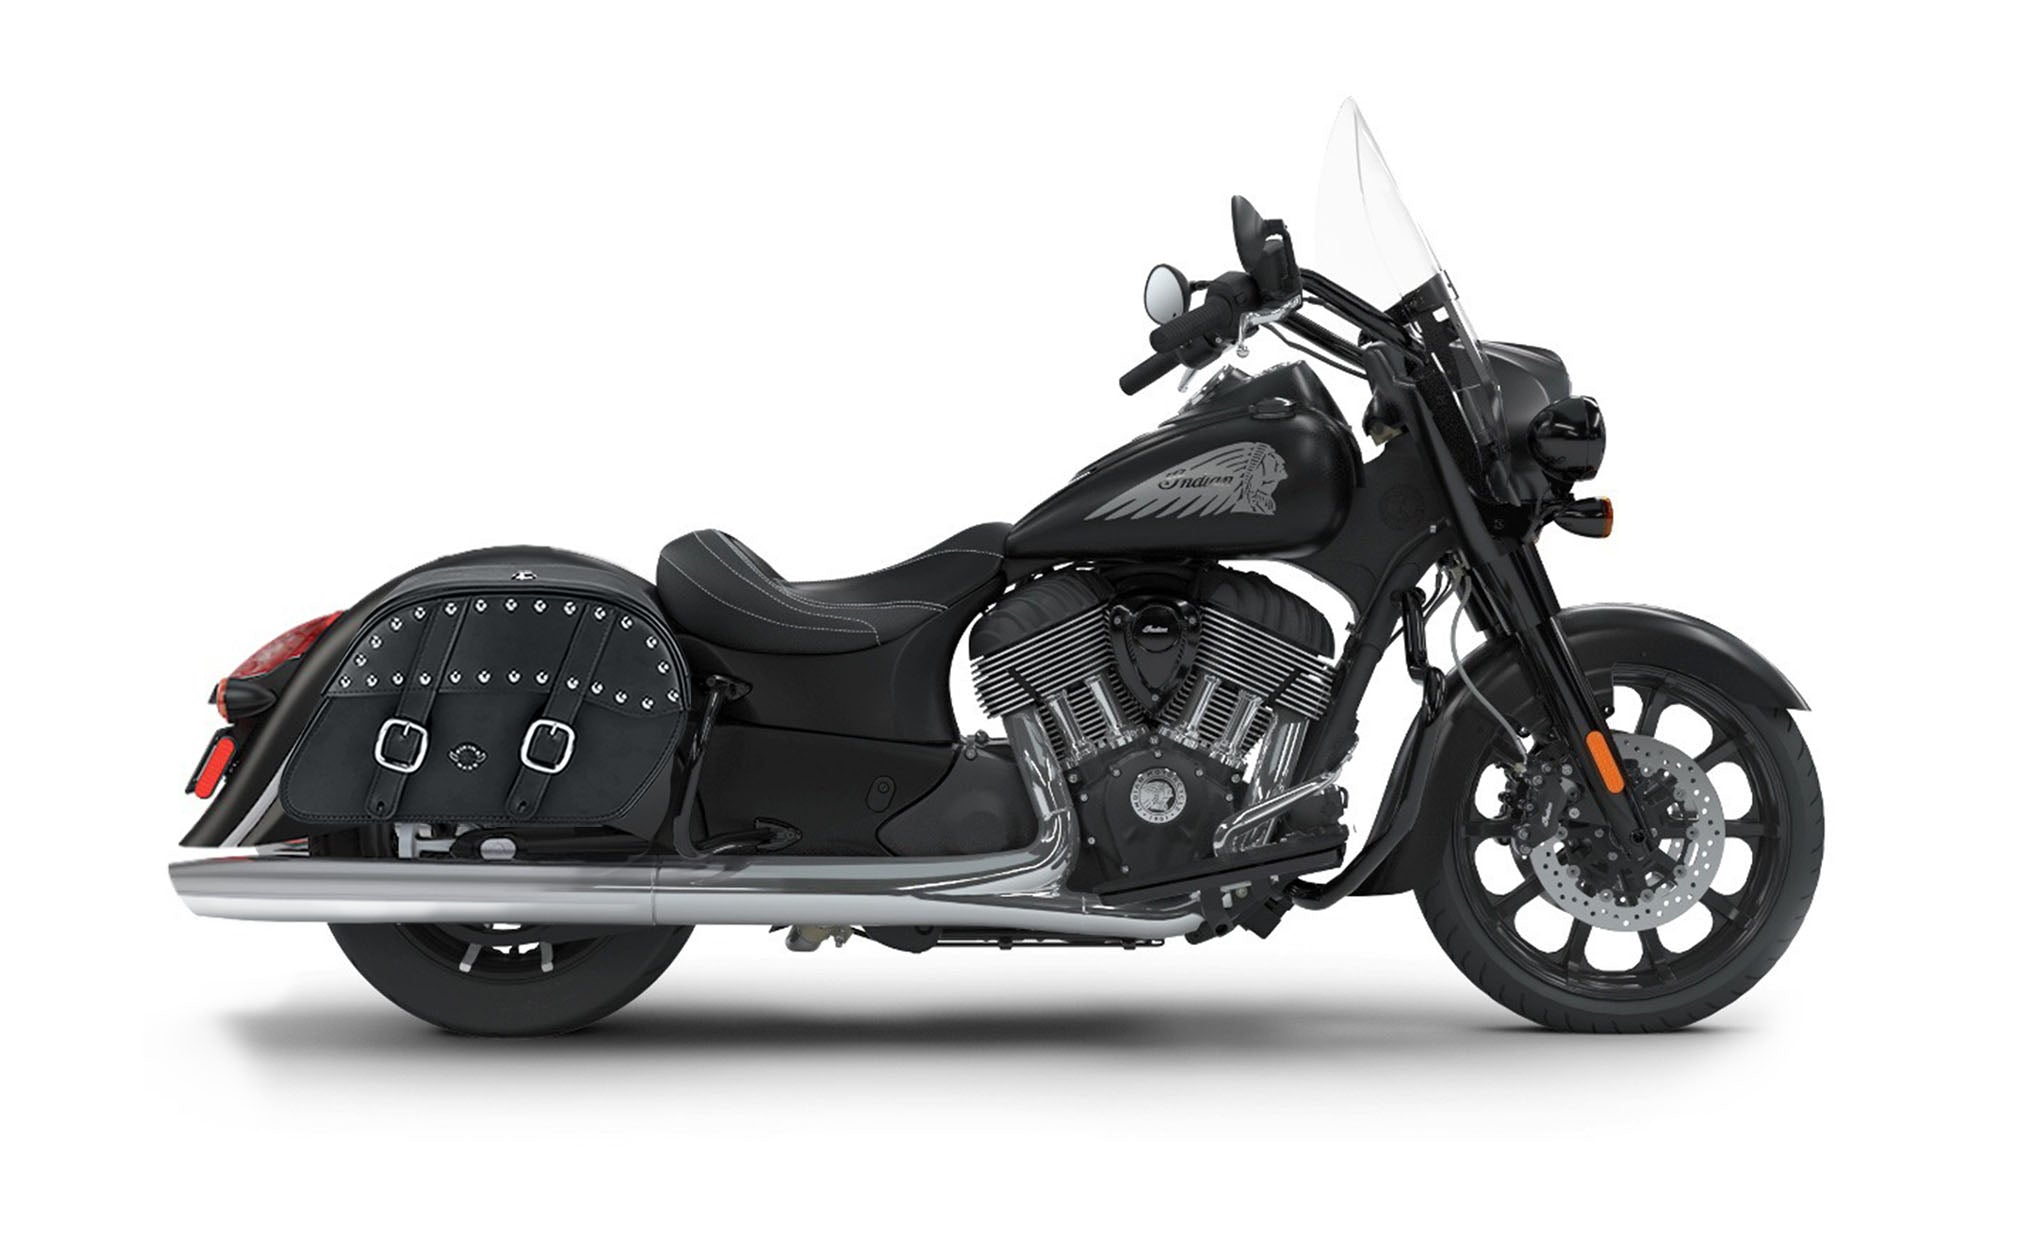 Viking Skarner Large Indian Springfield Darkhorse Leather Studded Motorcycle Saddlebags on Bike Photo @expand